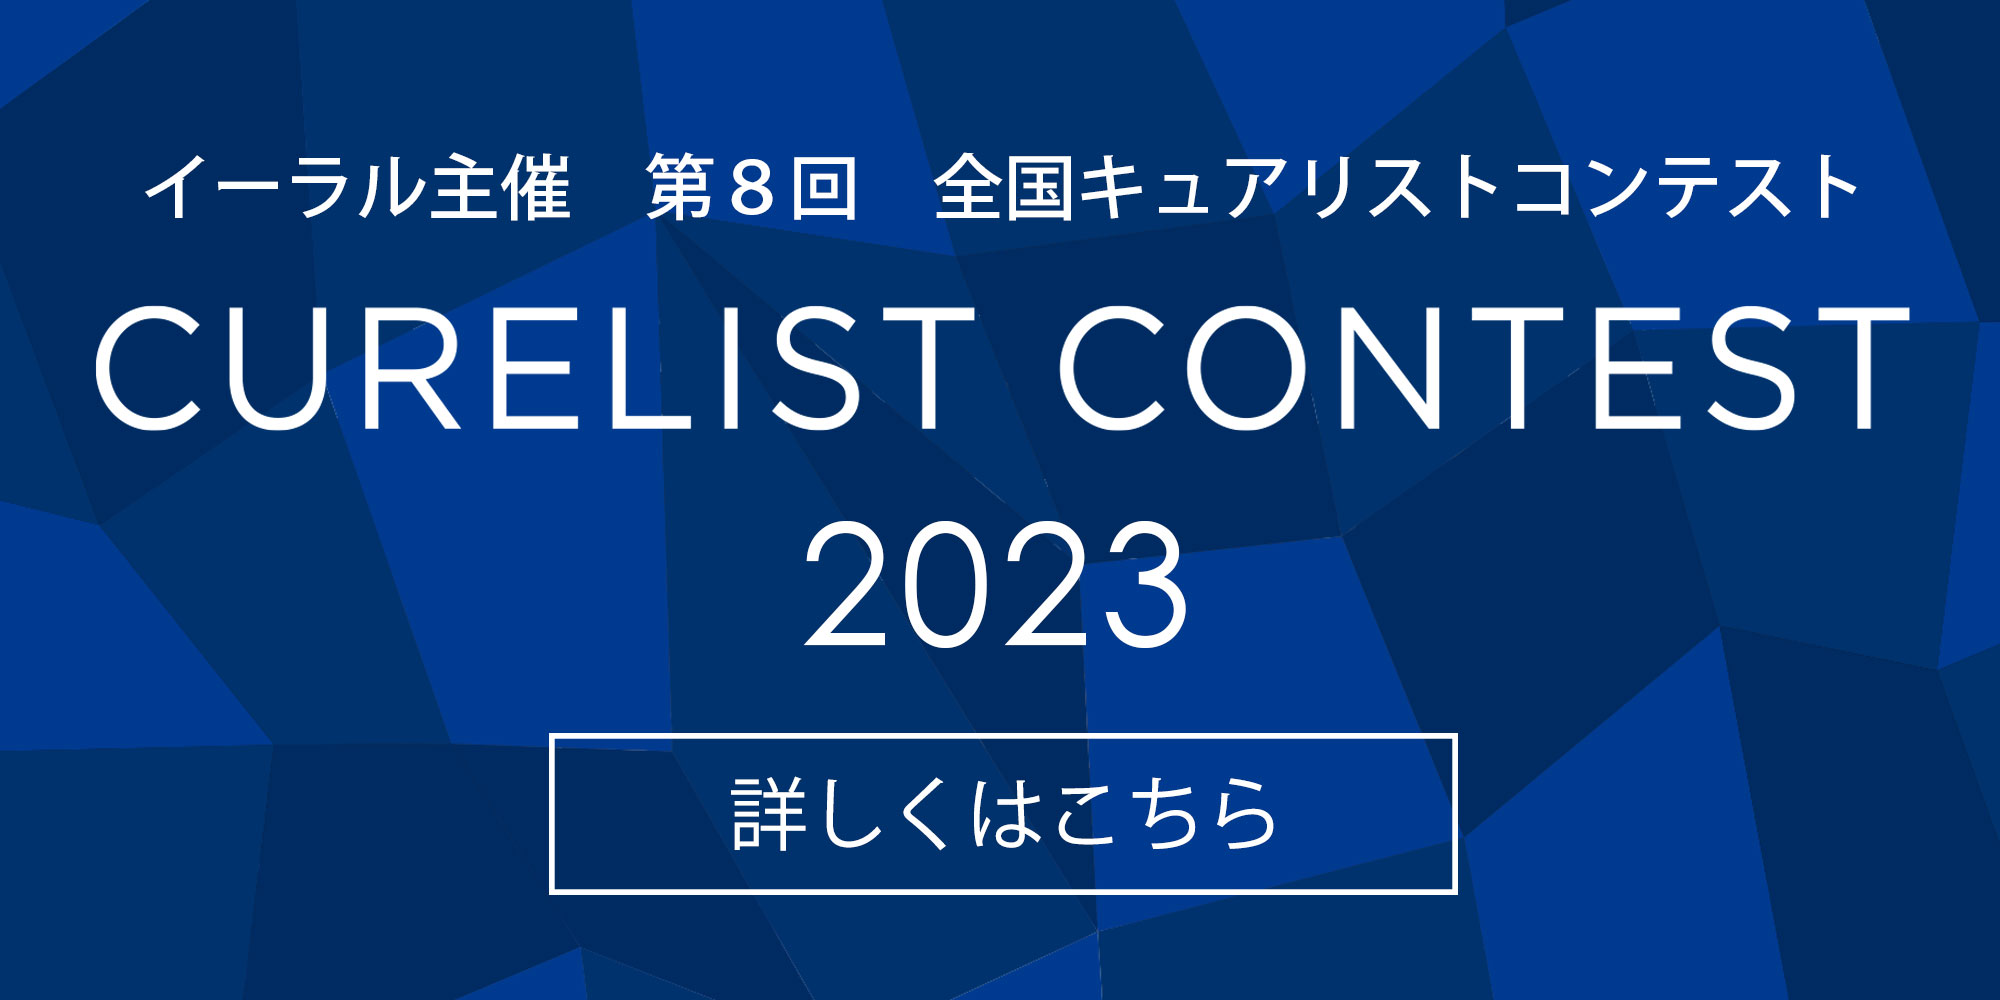 Curelist Contest 2022